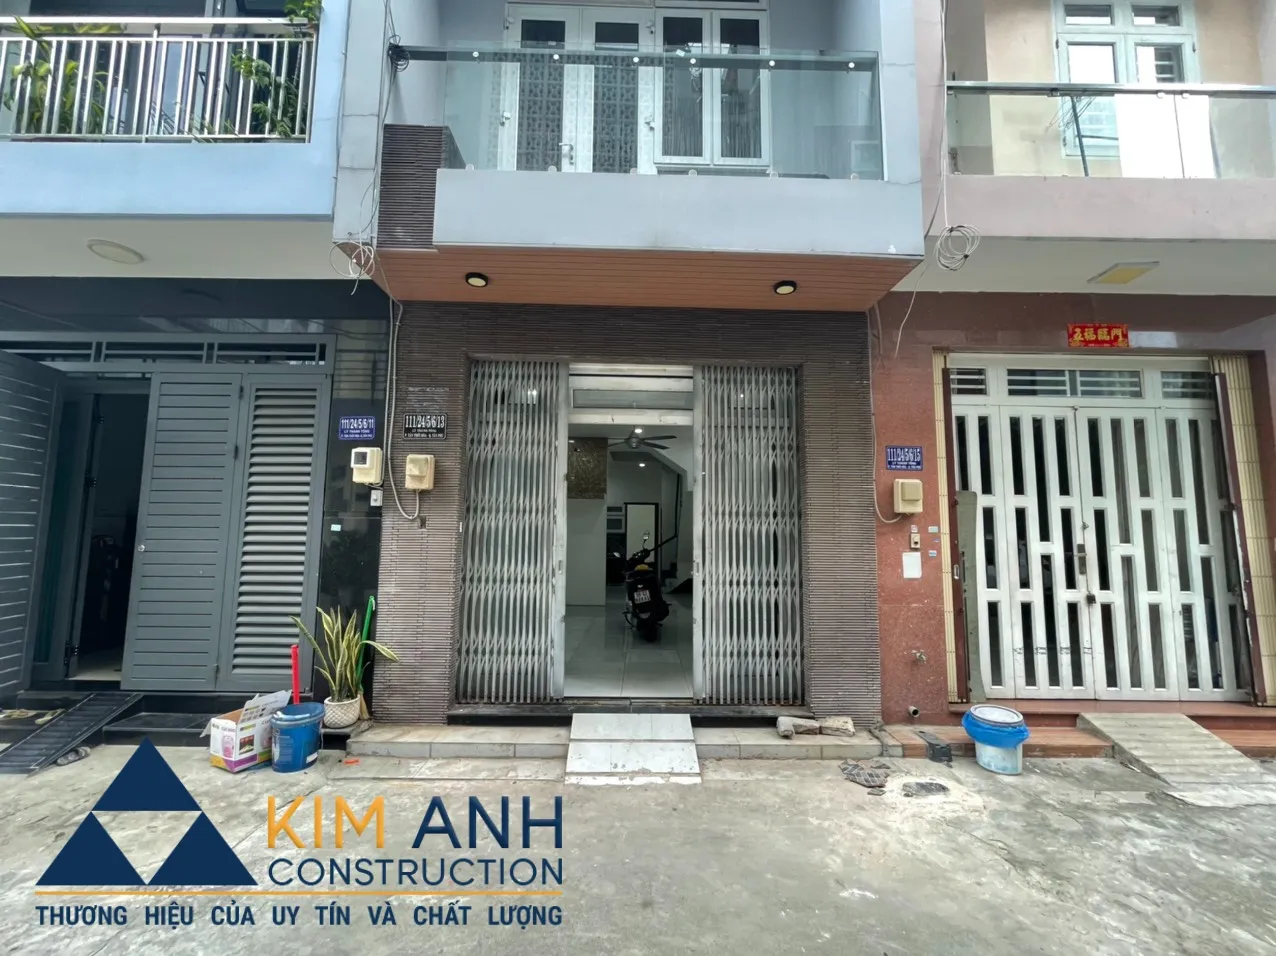 Xây Dựng Kim Anh sửa chữa nhà Quận Tân Phú